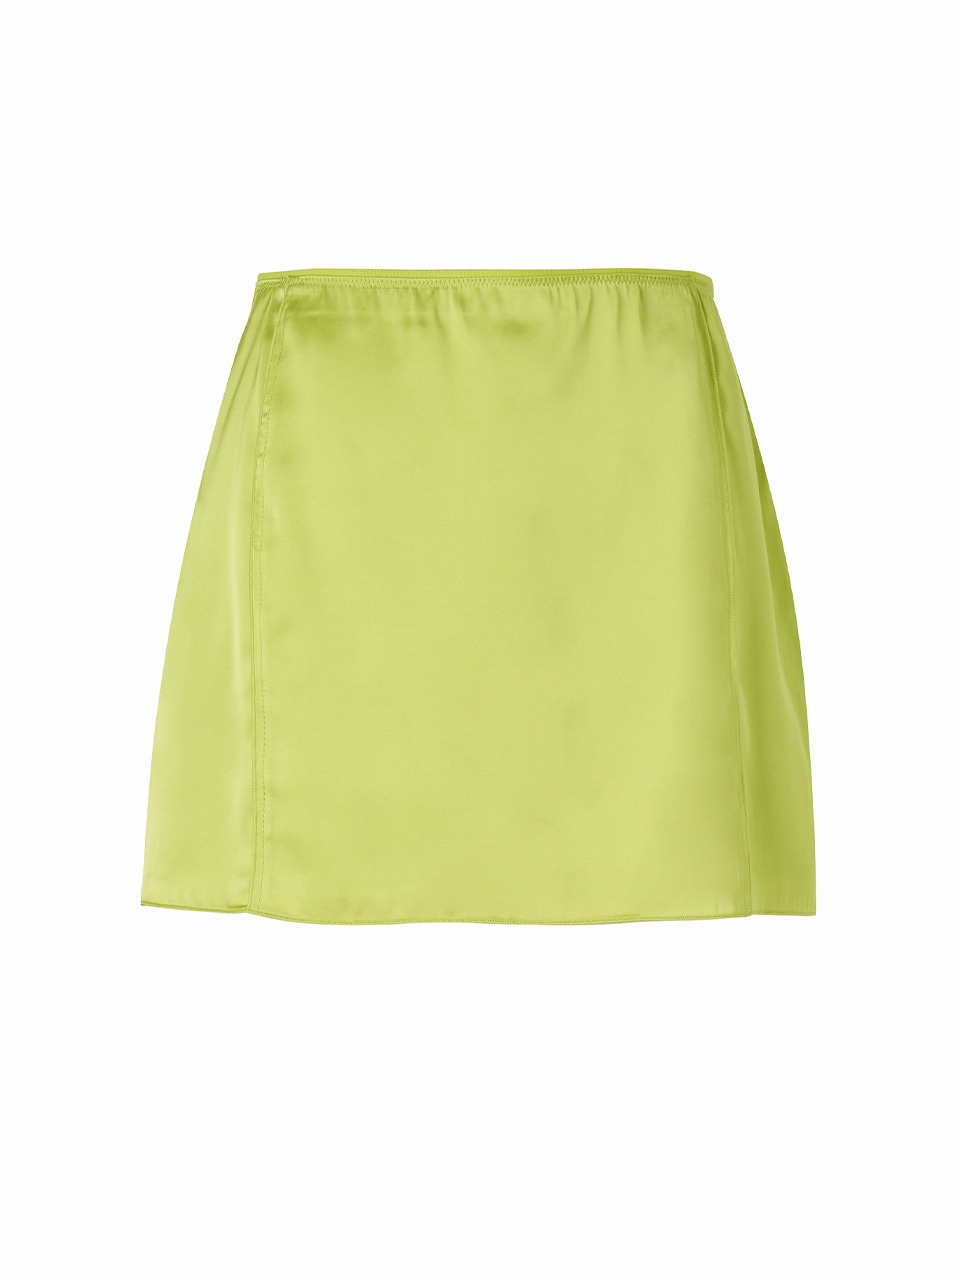 Lola Mini Skirt Lime Punch